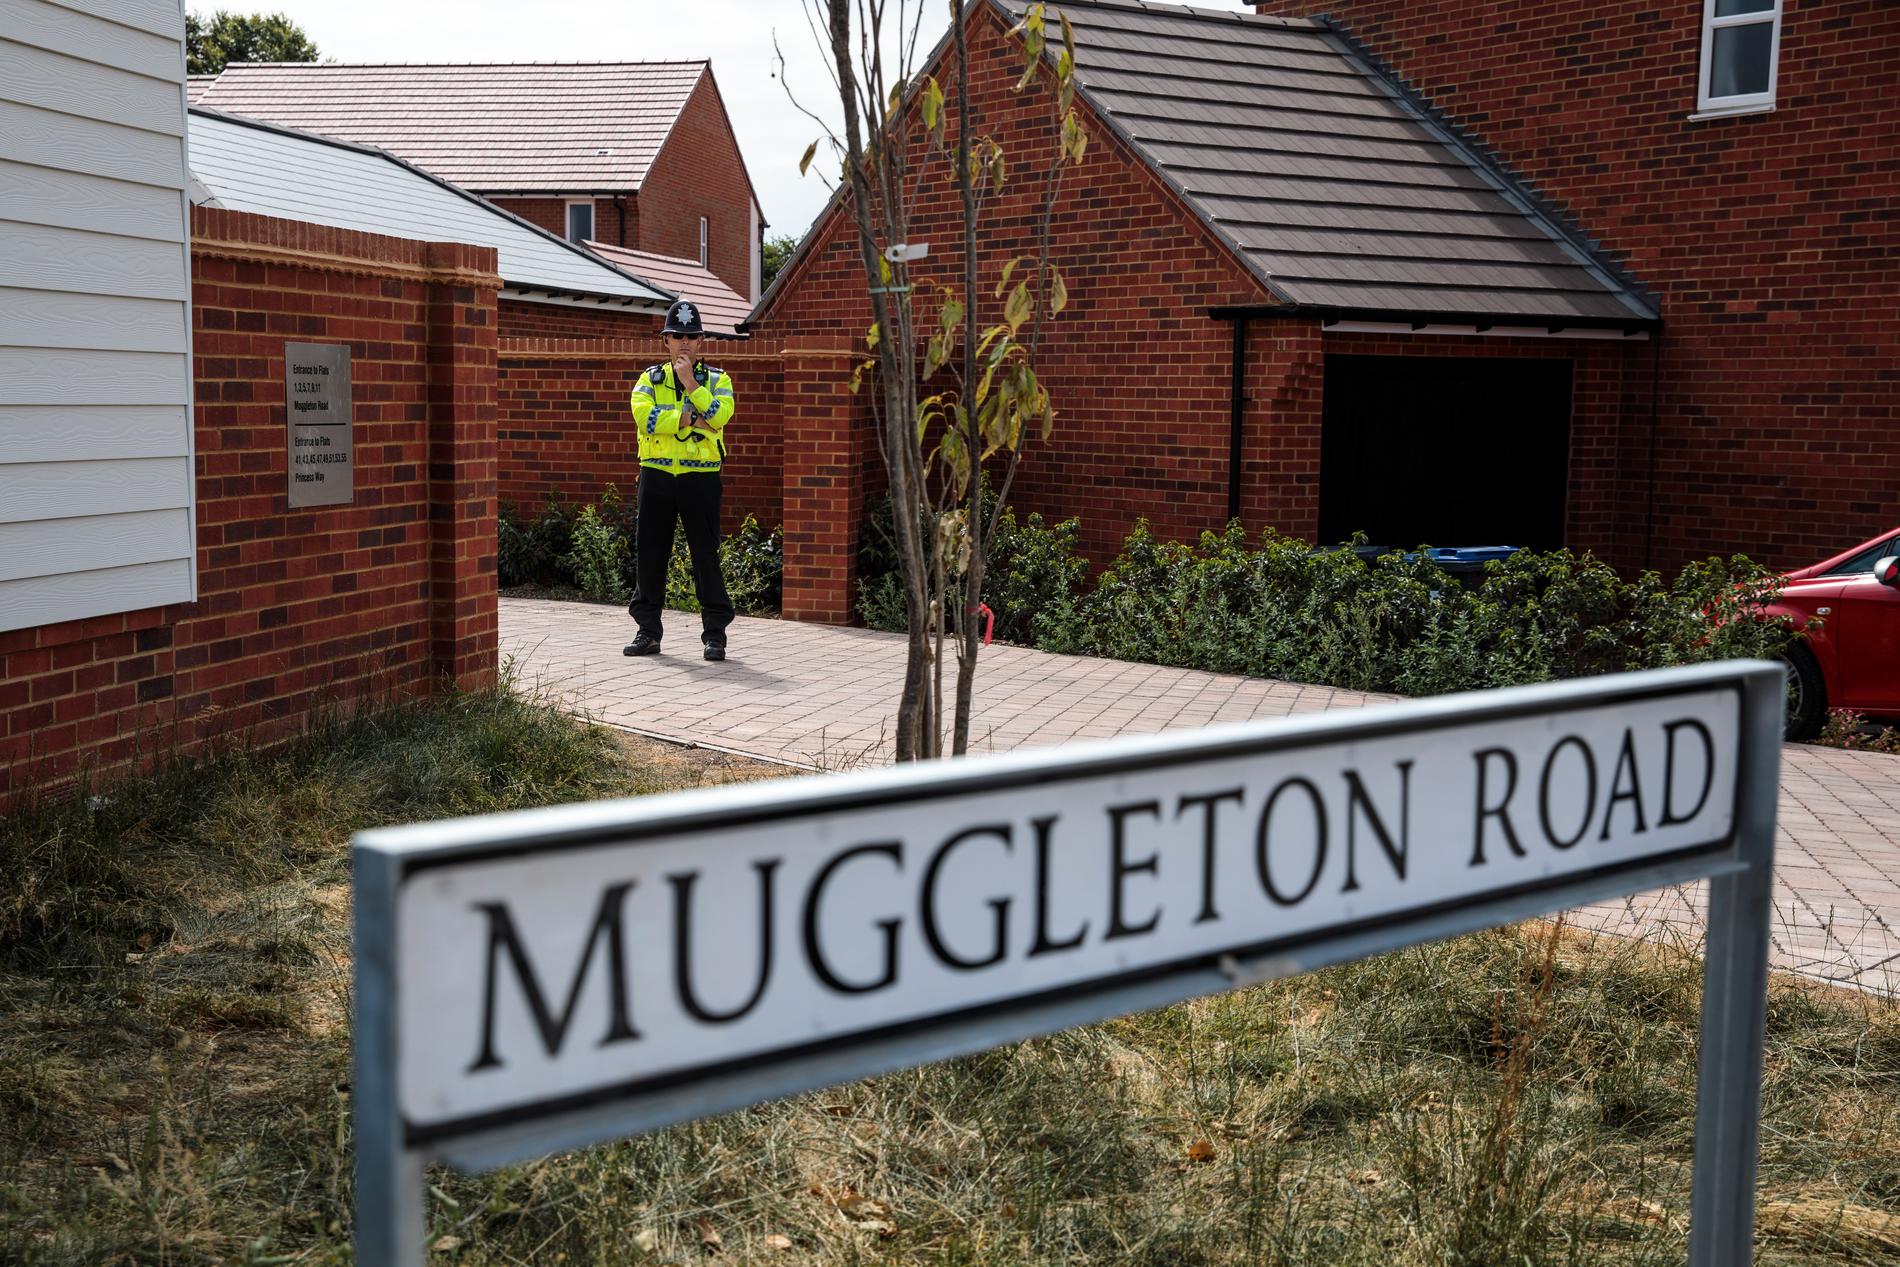 En man och en kvinna påträffades medvetslösa på Muggleton Road i Amesbury.